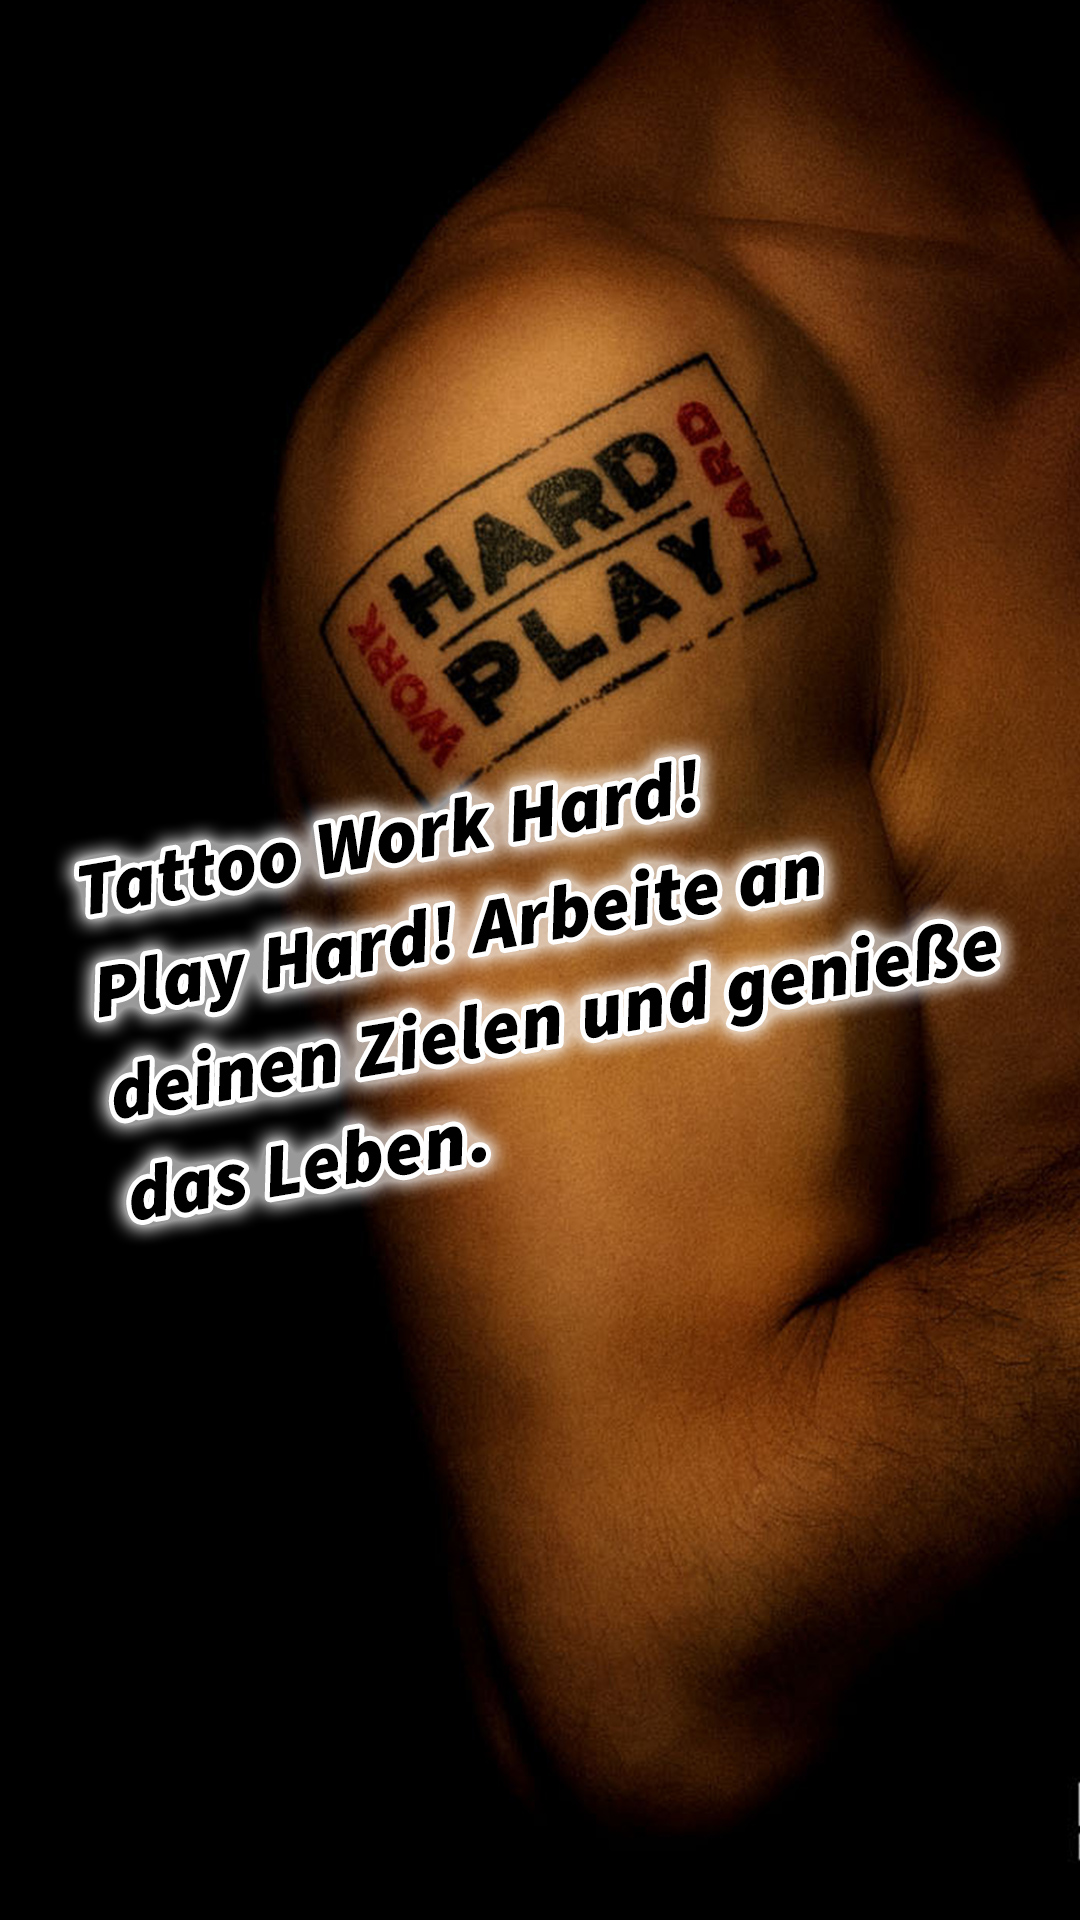 Tattoo Work Hard! Play Hard! Arbeite an deinen Zielen und genieße das Leben. Work Smart #GedankenZumLeben